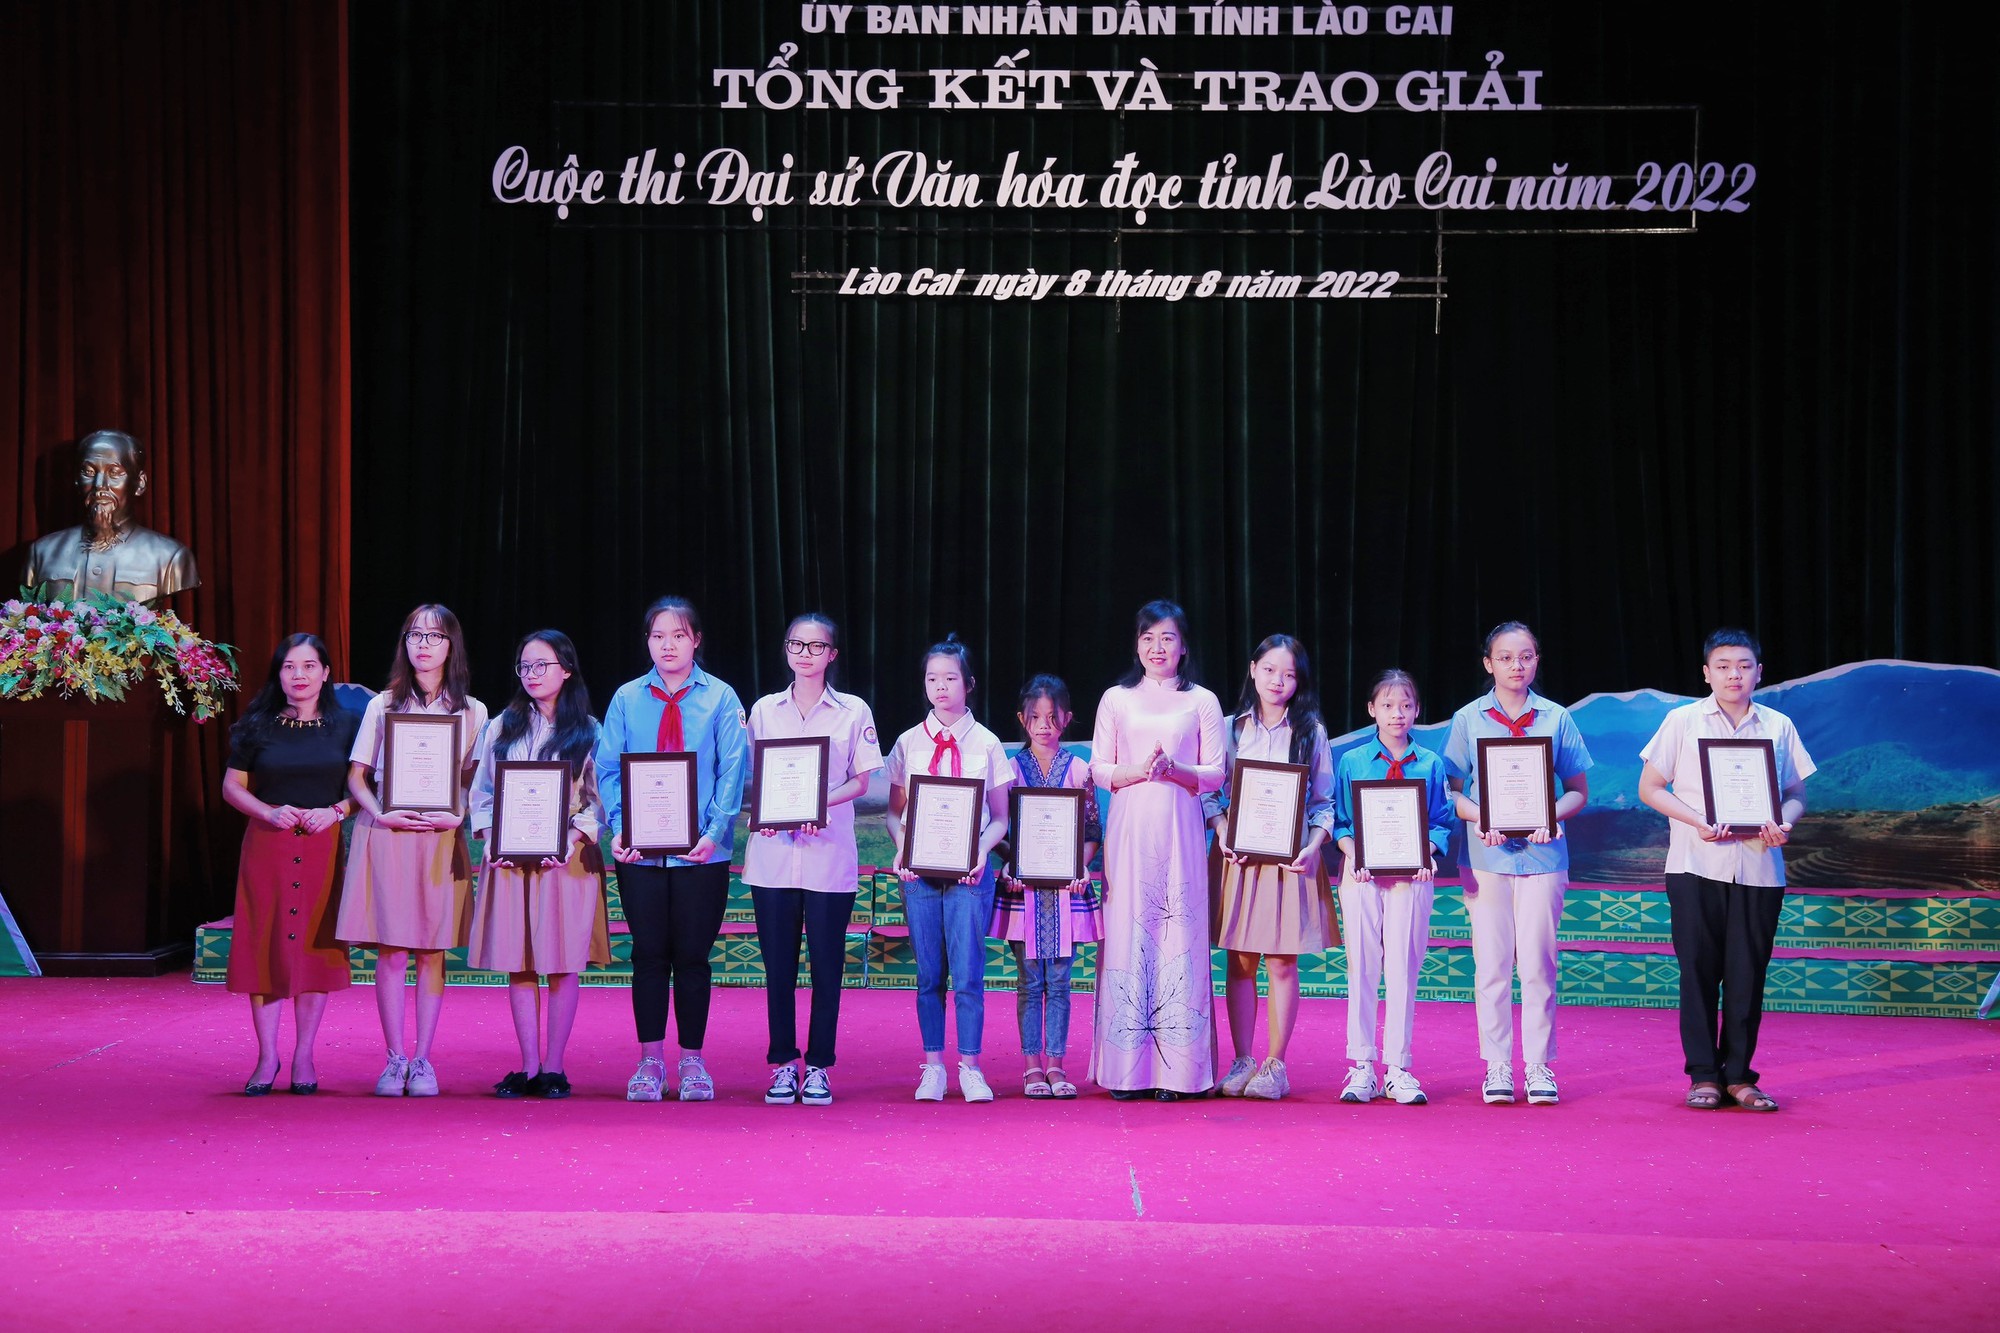 Tổng kết và trao giải Cuộc thi Đại sứ Văn hóa đọc tỉnh Lào Cai năm 2022 - Ảnh 5.